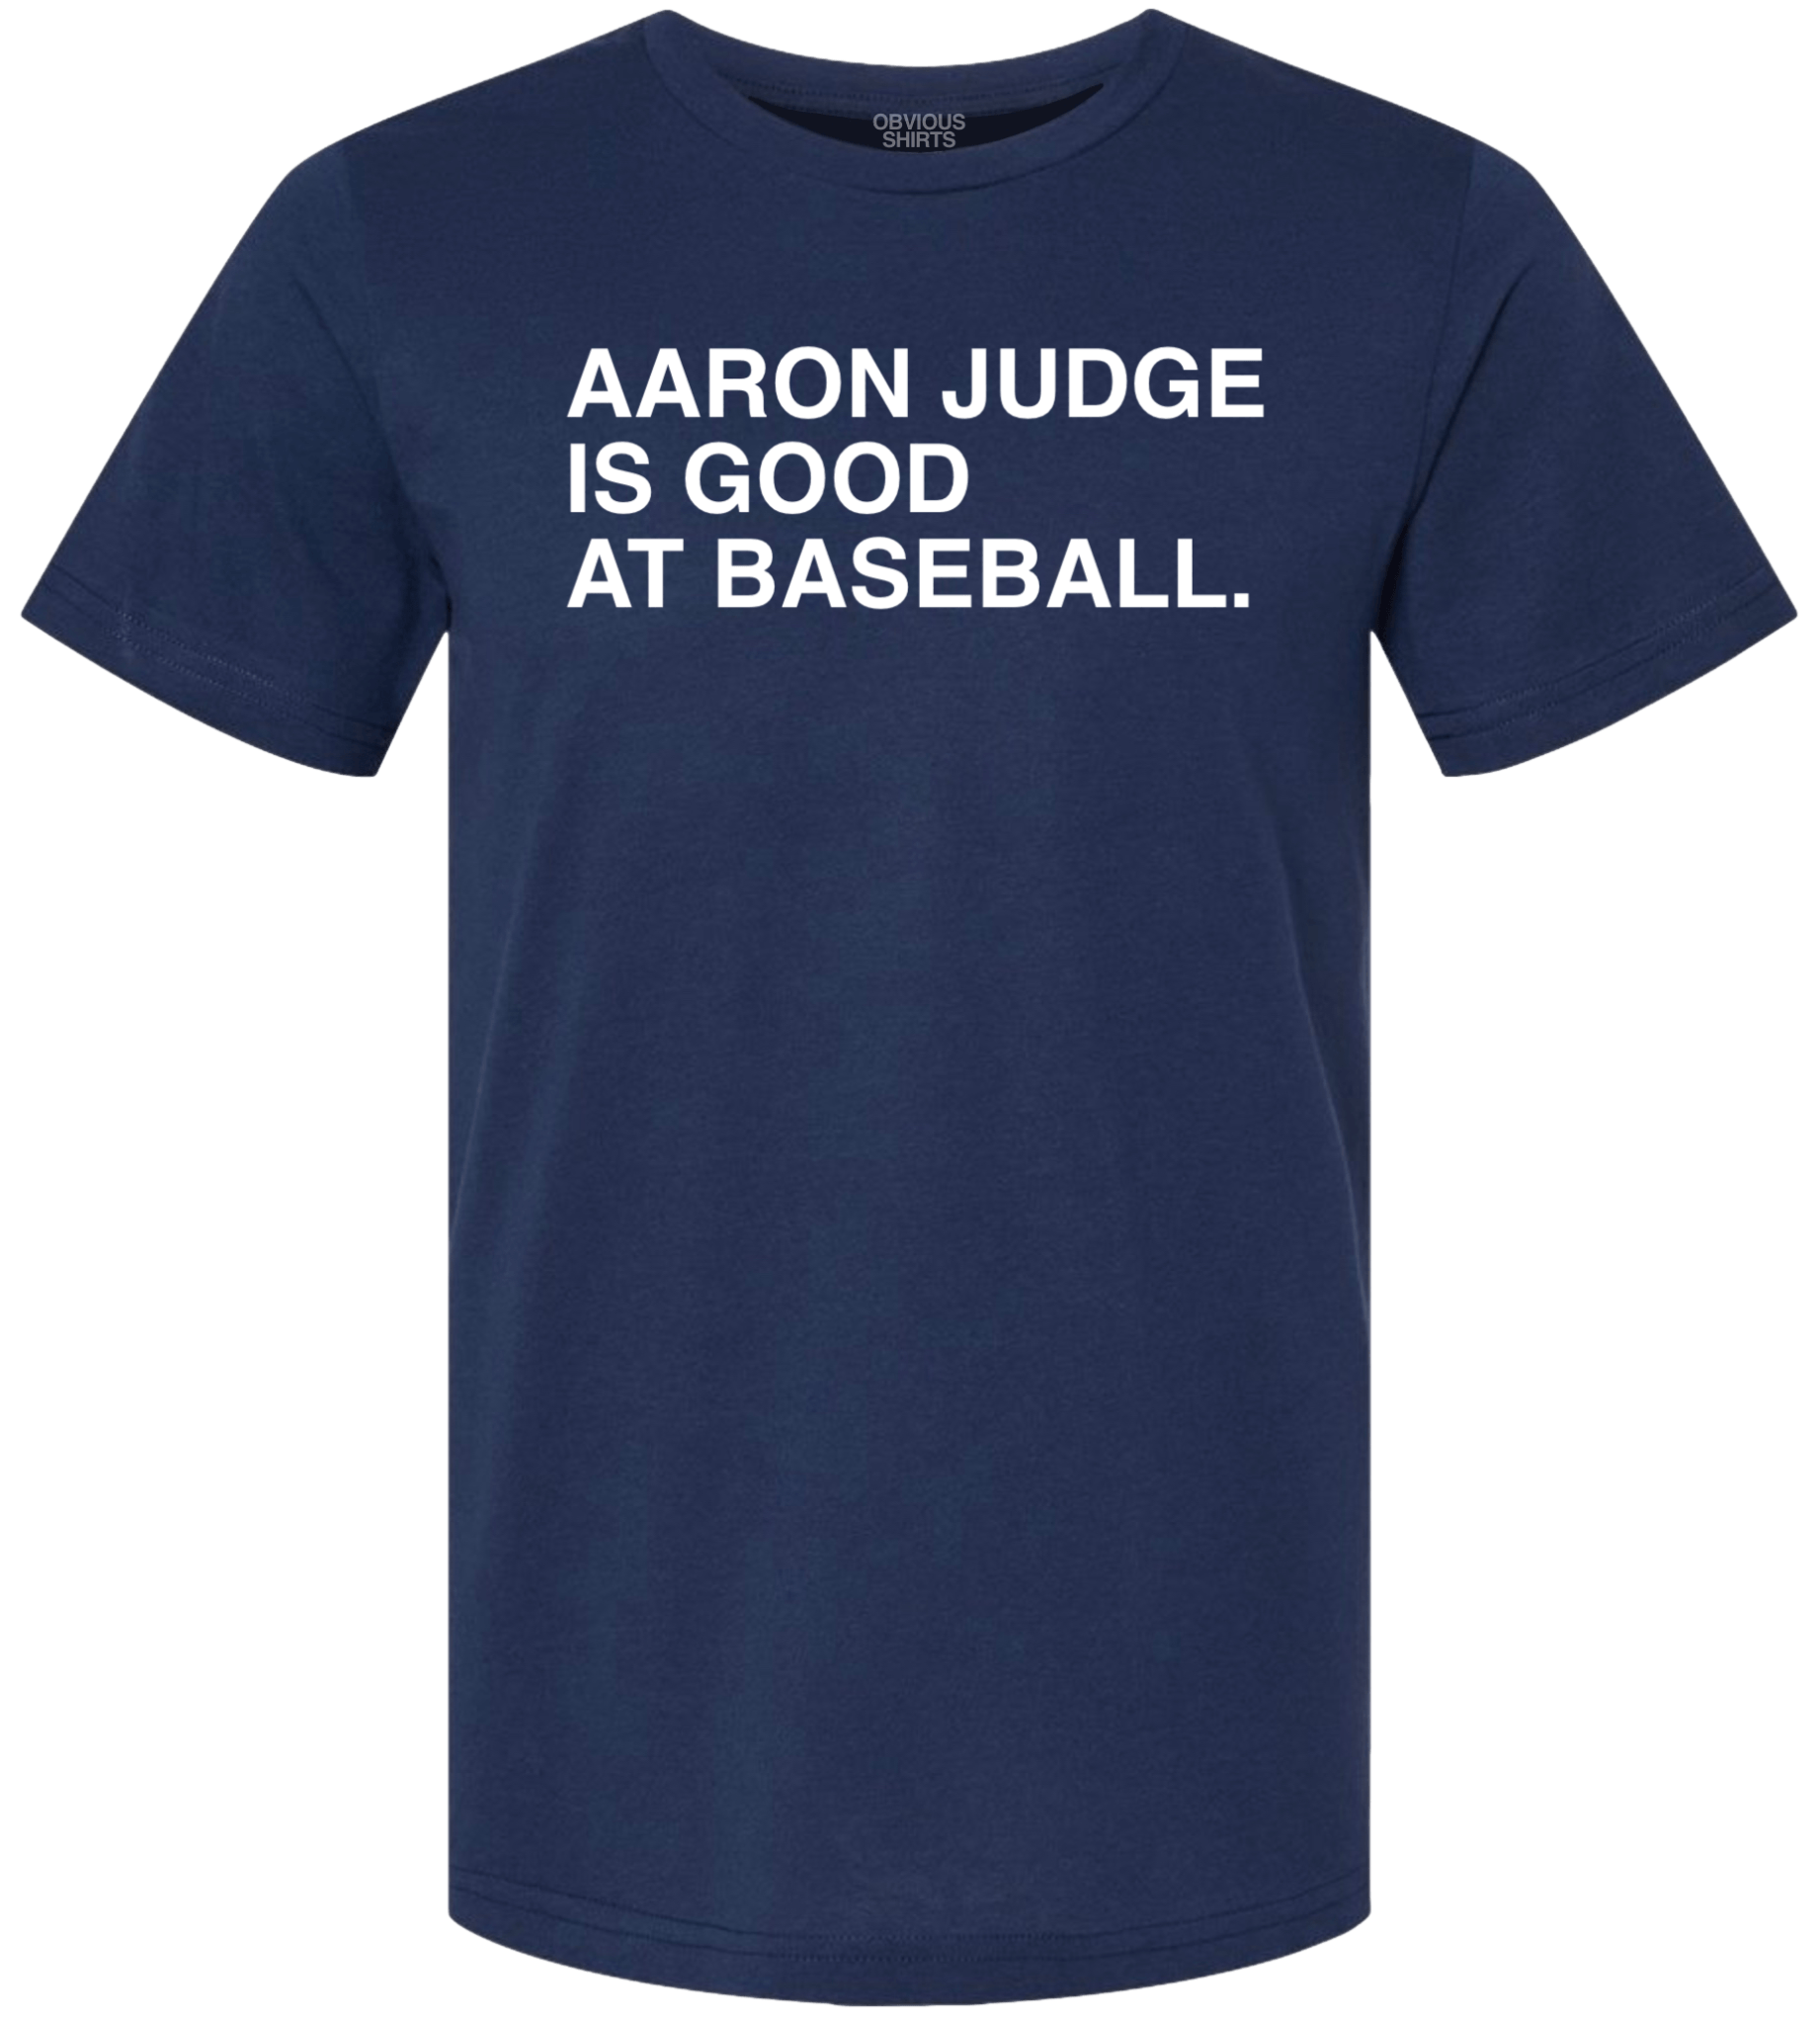 Aaron Judge Is Good at Baseball. | obvious Shirts. Navy / XL